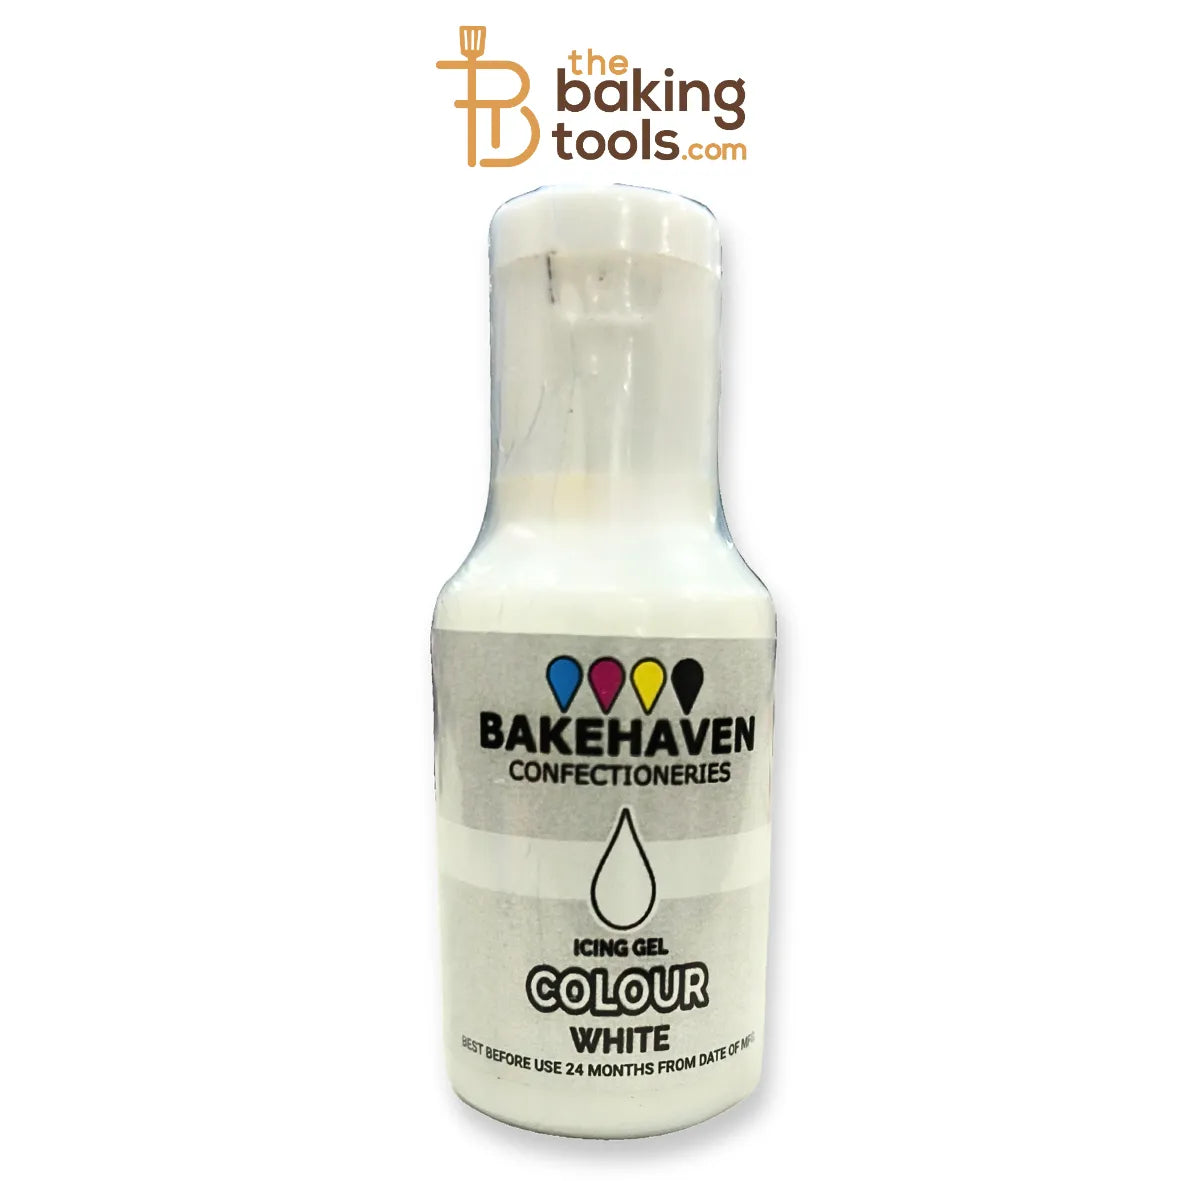 Bake Heaven Icing Gel Colour White - thebakingtools.com